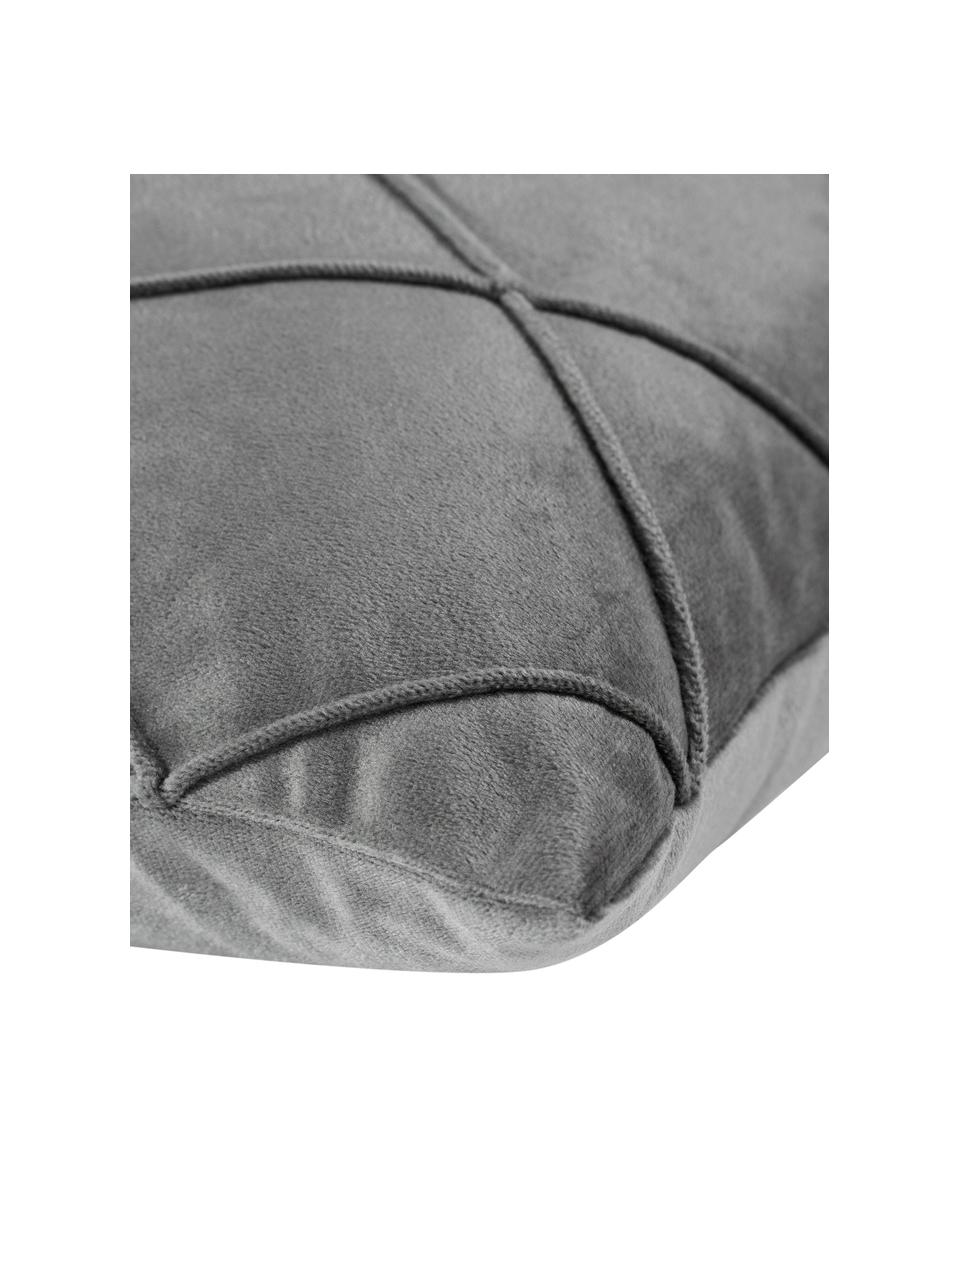 Fluwelen kussenhoes Nobless met verhoogd ruitjesmotief, 100% polyester fluweel, Grijs, B 40 x L 40 cm